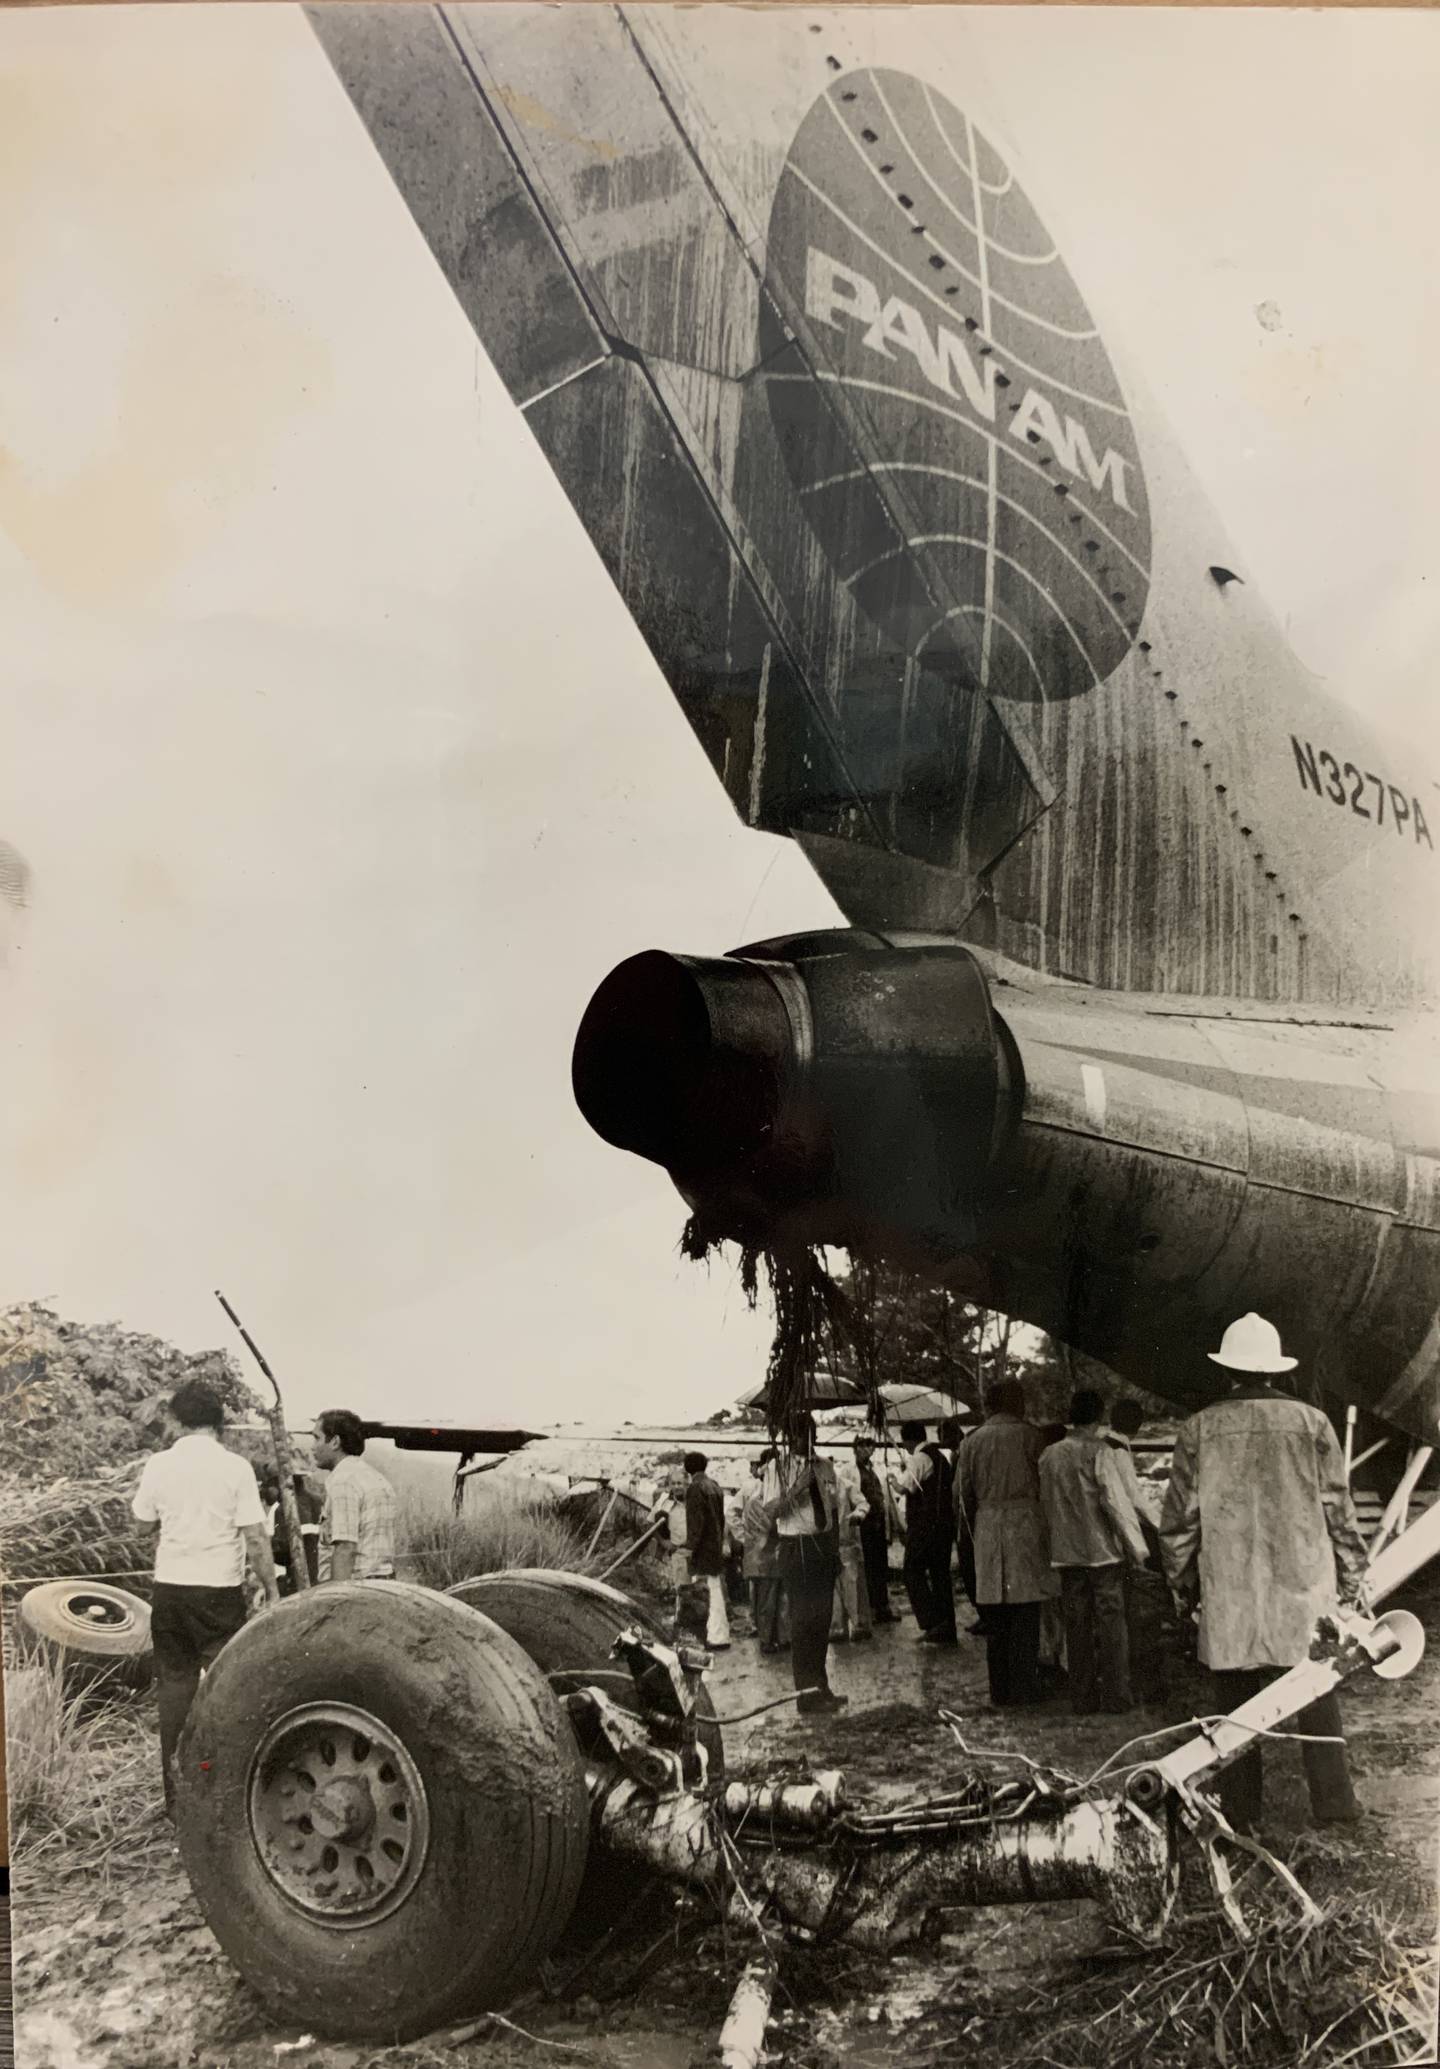 En el proceso, la aeronave destruyó la malla metálica que protege la pista y cruzó una vía pública de tierra, quedando finalmente en un campo de frijoles. Además, se perdieron las ruedas delanteras, y se produjeron otros daños.